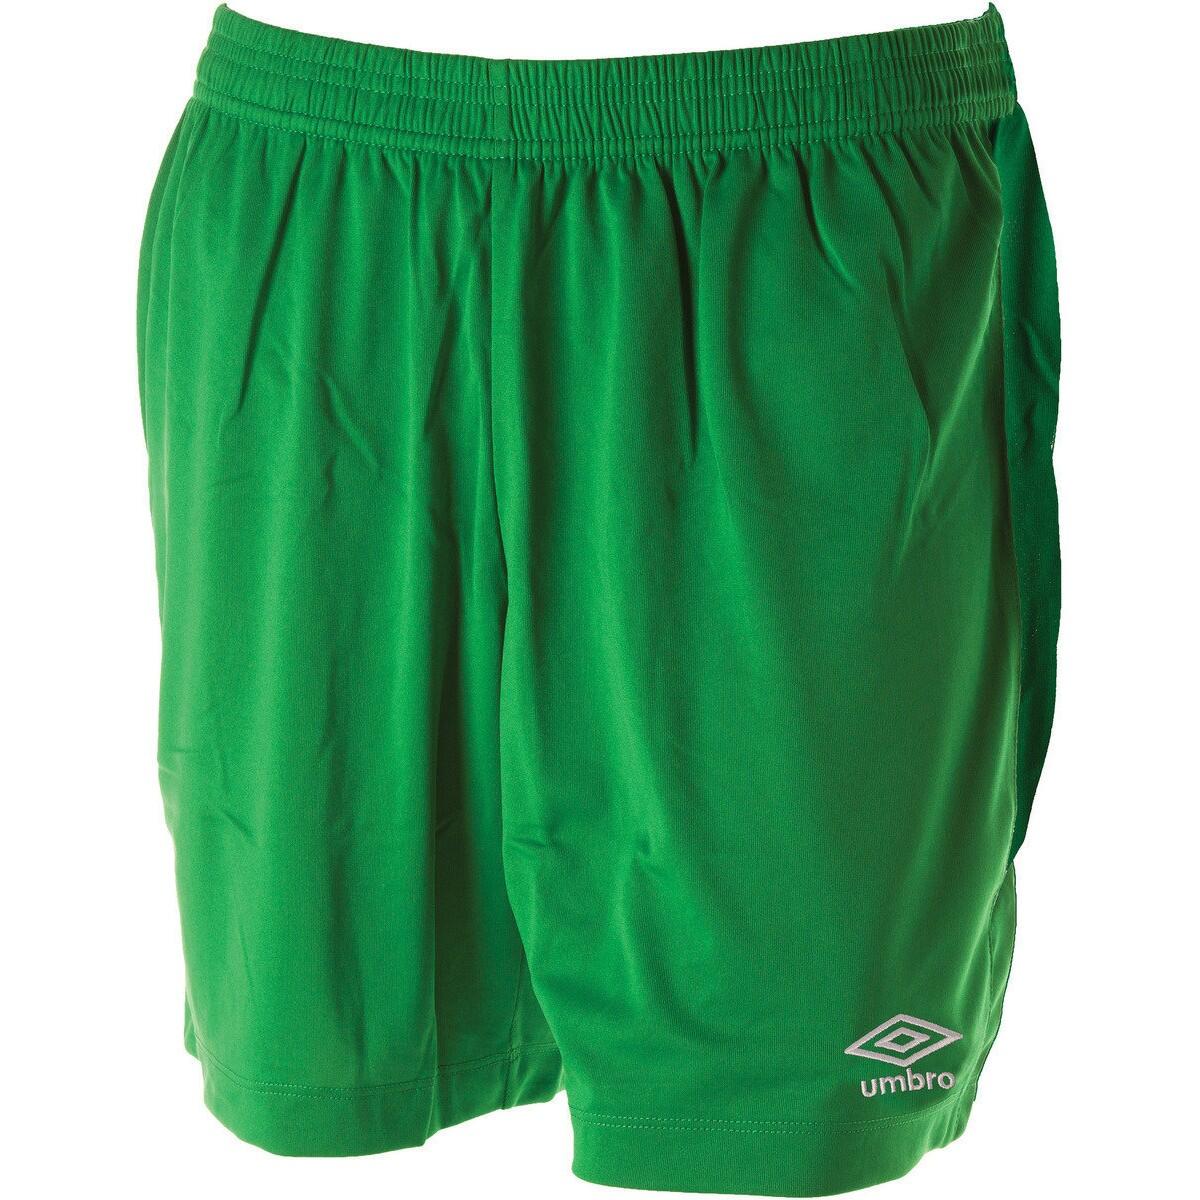 UMBRO Mens Club II Shorts (Emerald)